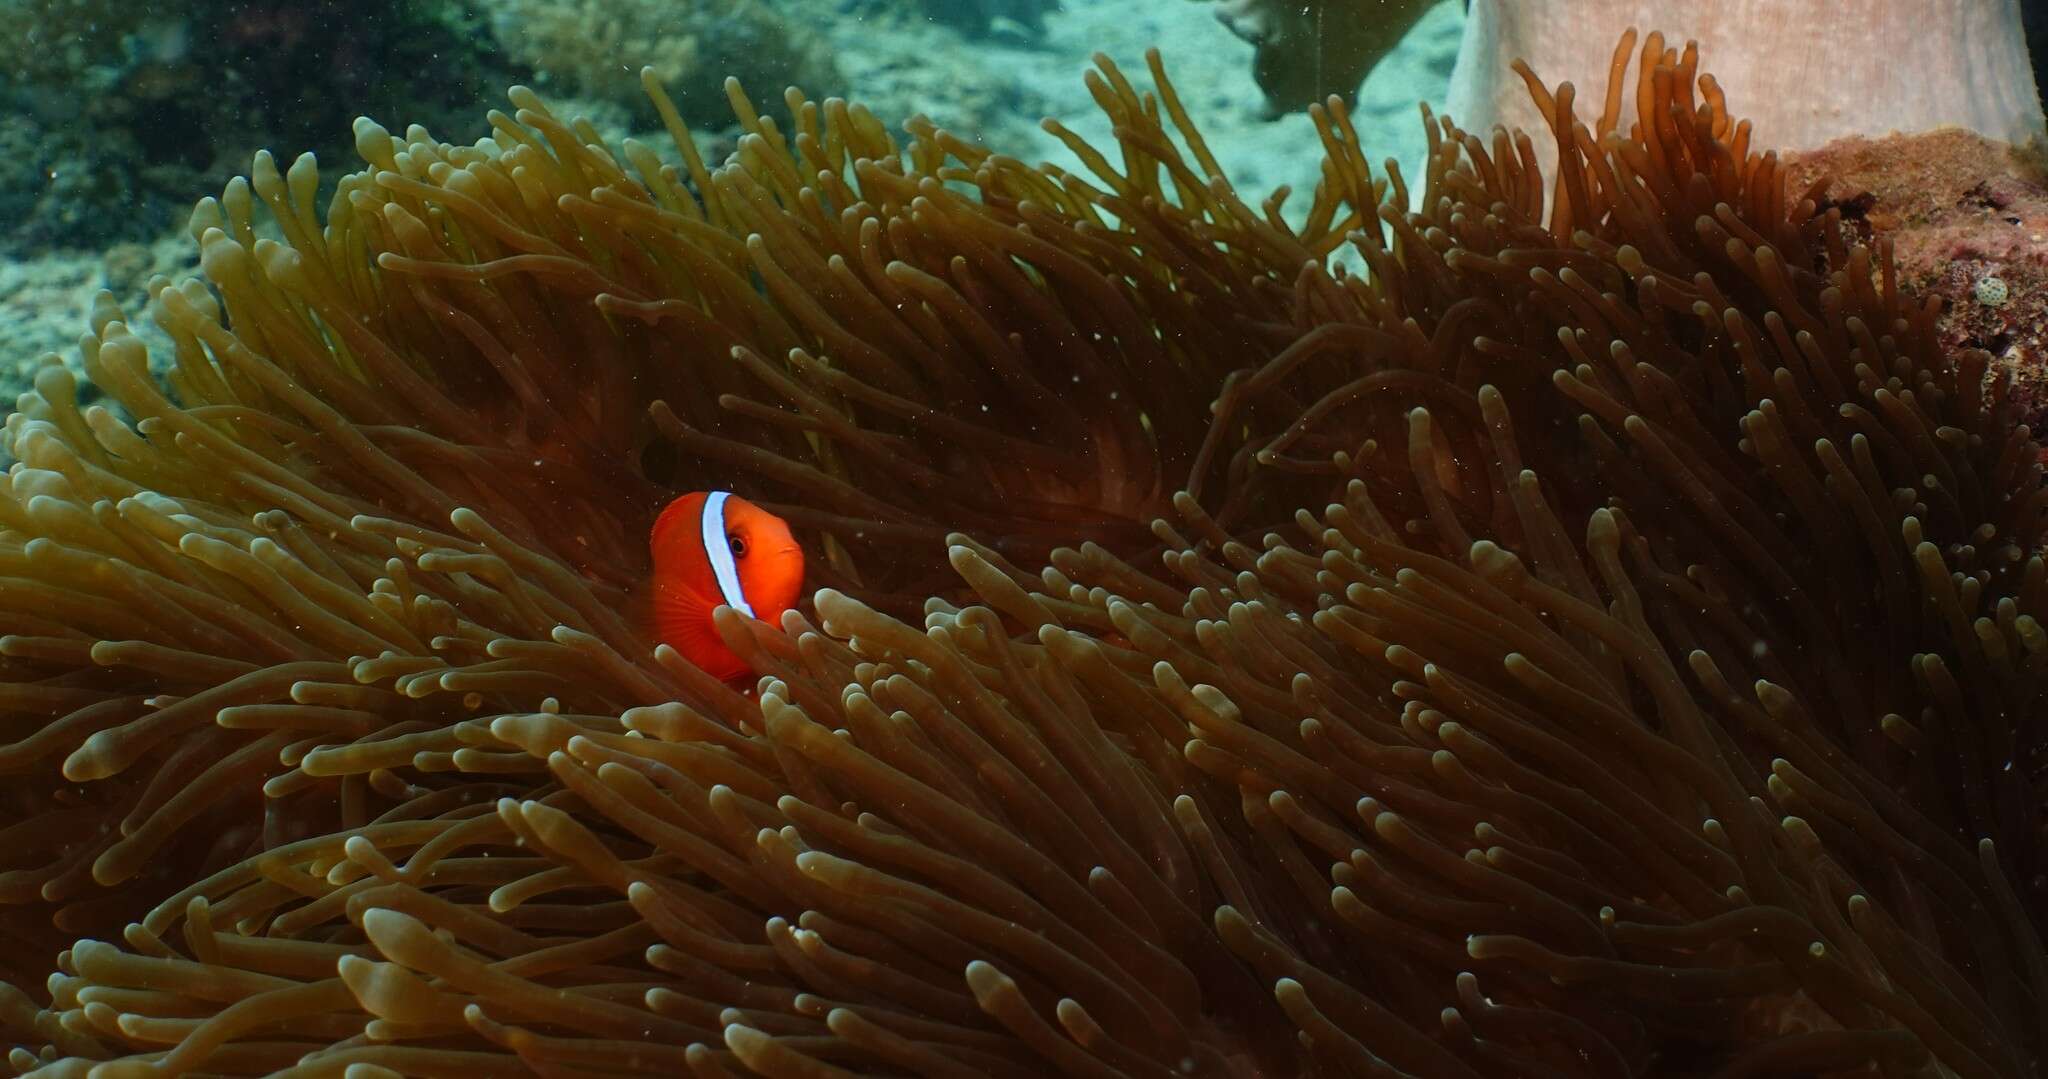 Image of Blackback anemonefish